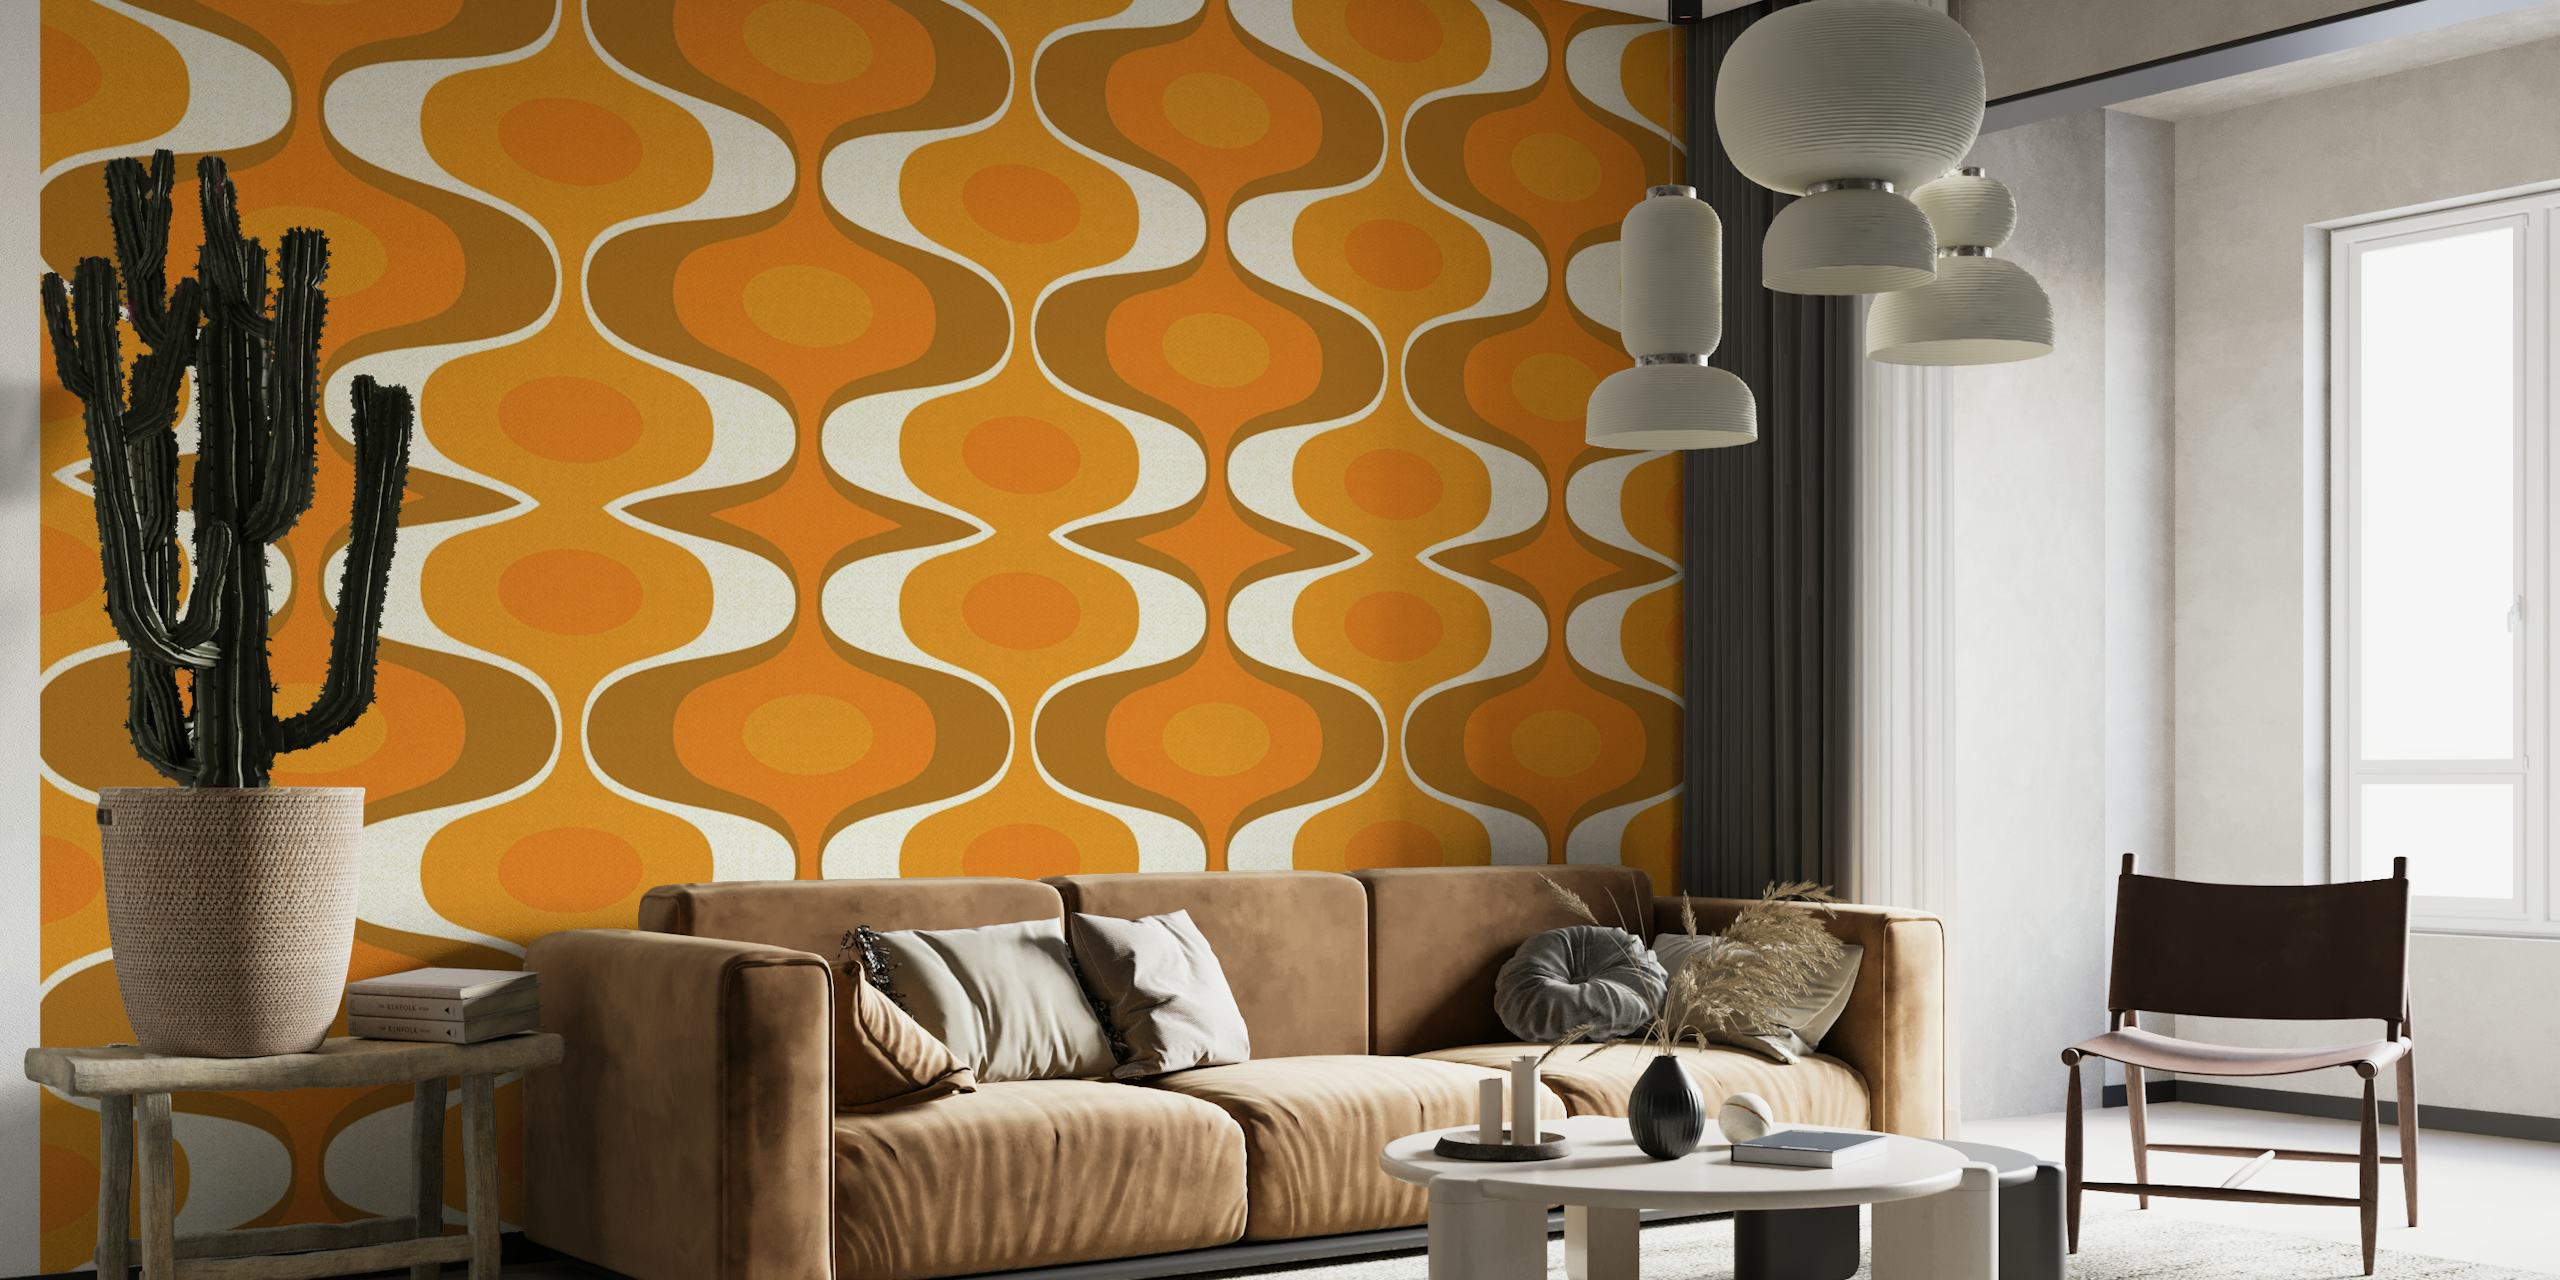 Zidna slika s geometrijskim uzorkom s narančastim i zemljanim tonovima odražava retro stil 70-ih